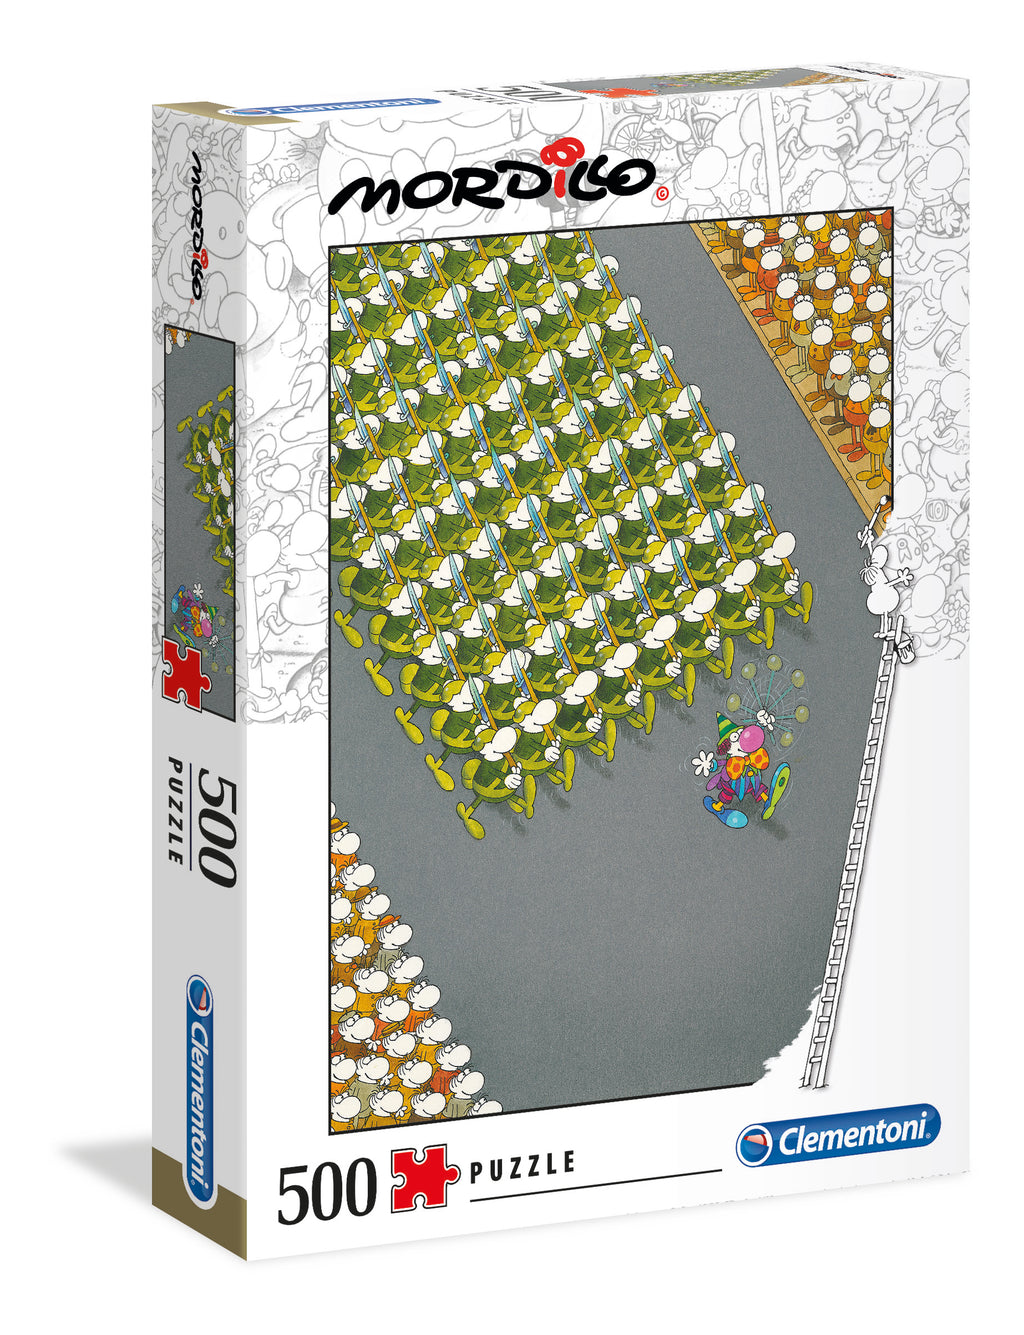 Puzzle Clementoni Mordillo, The March - 500 piezas - Mordillo-Doctor Panush